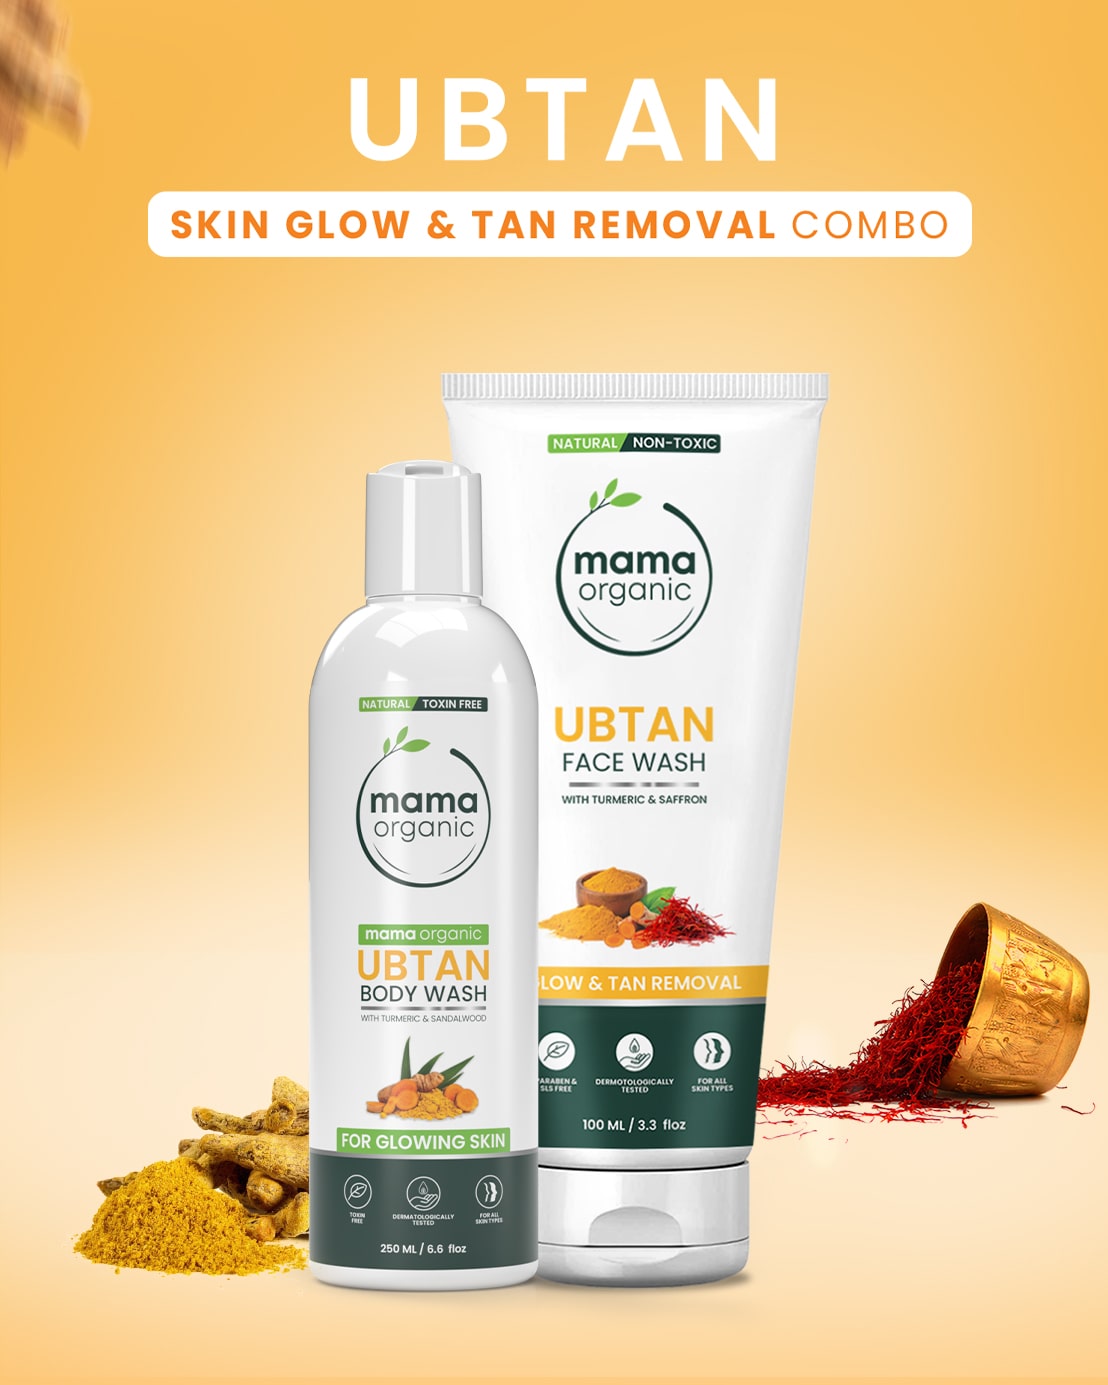 Ubtan Skin Glow & Tan Removal Combo 2